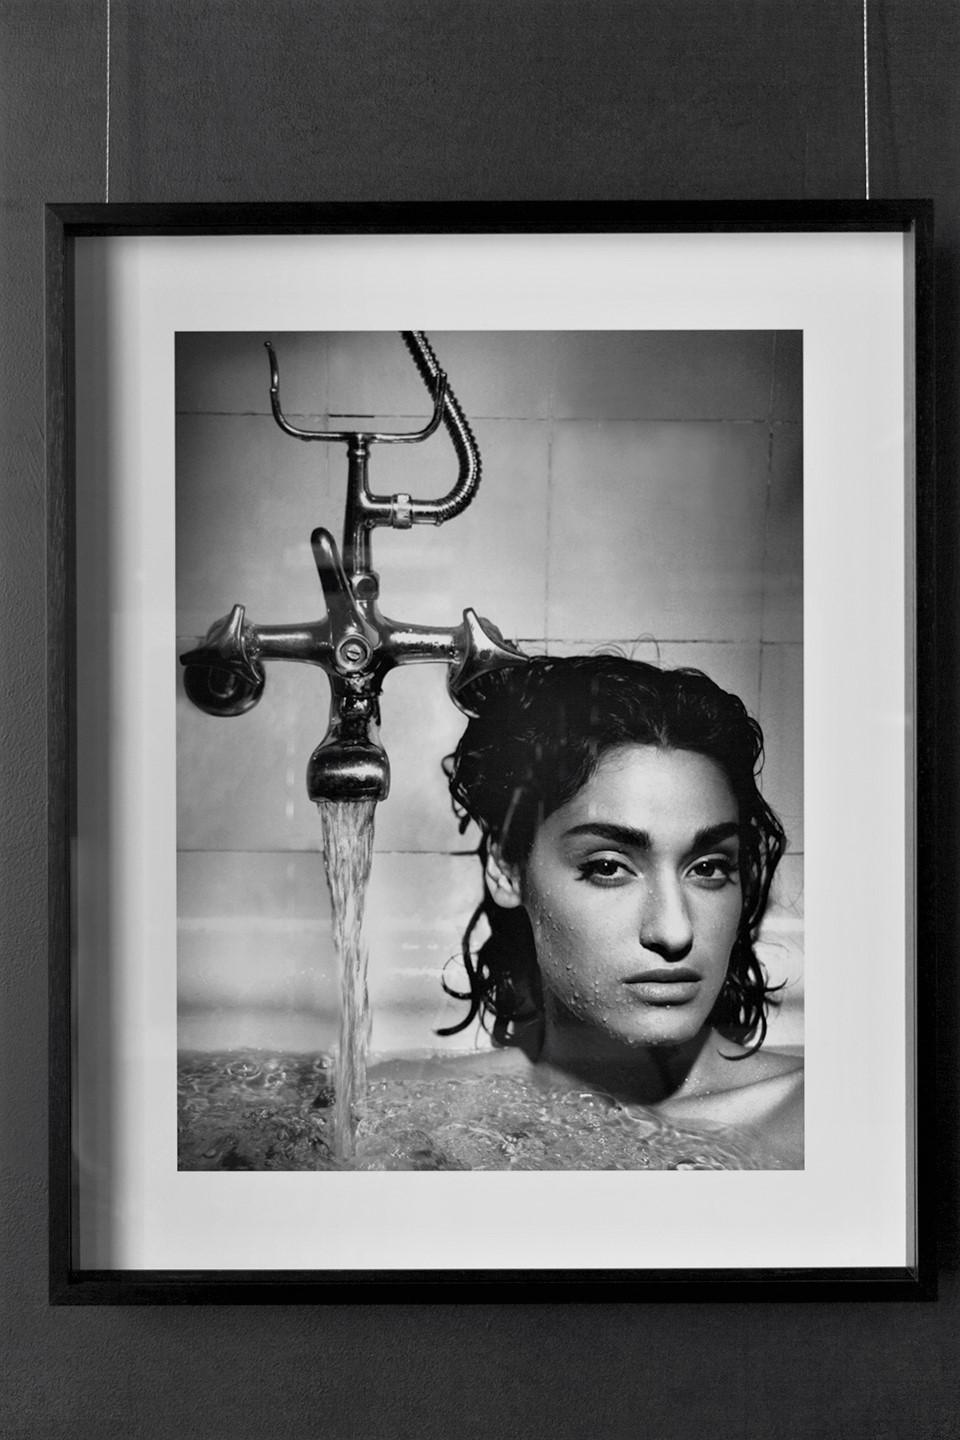 Yvette, Berlin - portrait of the supermodel in a bathtub - Photograph by Albert Watson